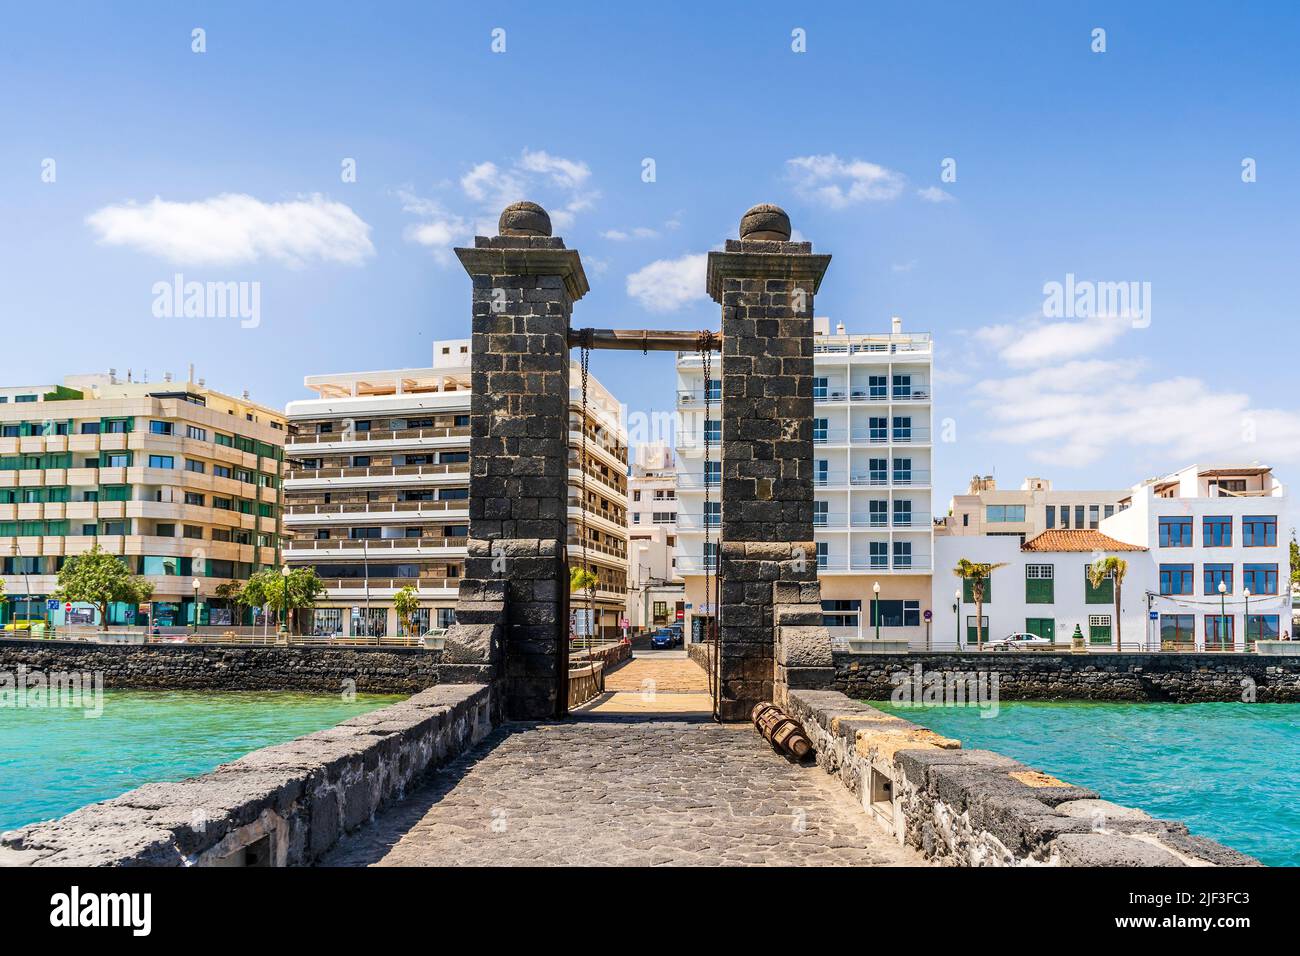 Historische Brückenbrücke, die zur Burg San Gabriel, Arrecife, Hauptstadt von Lanzarote, Kanarische Inseln, Spanien, führt Stockfoto